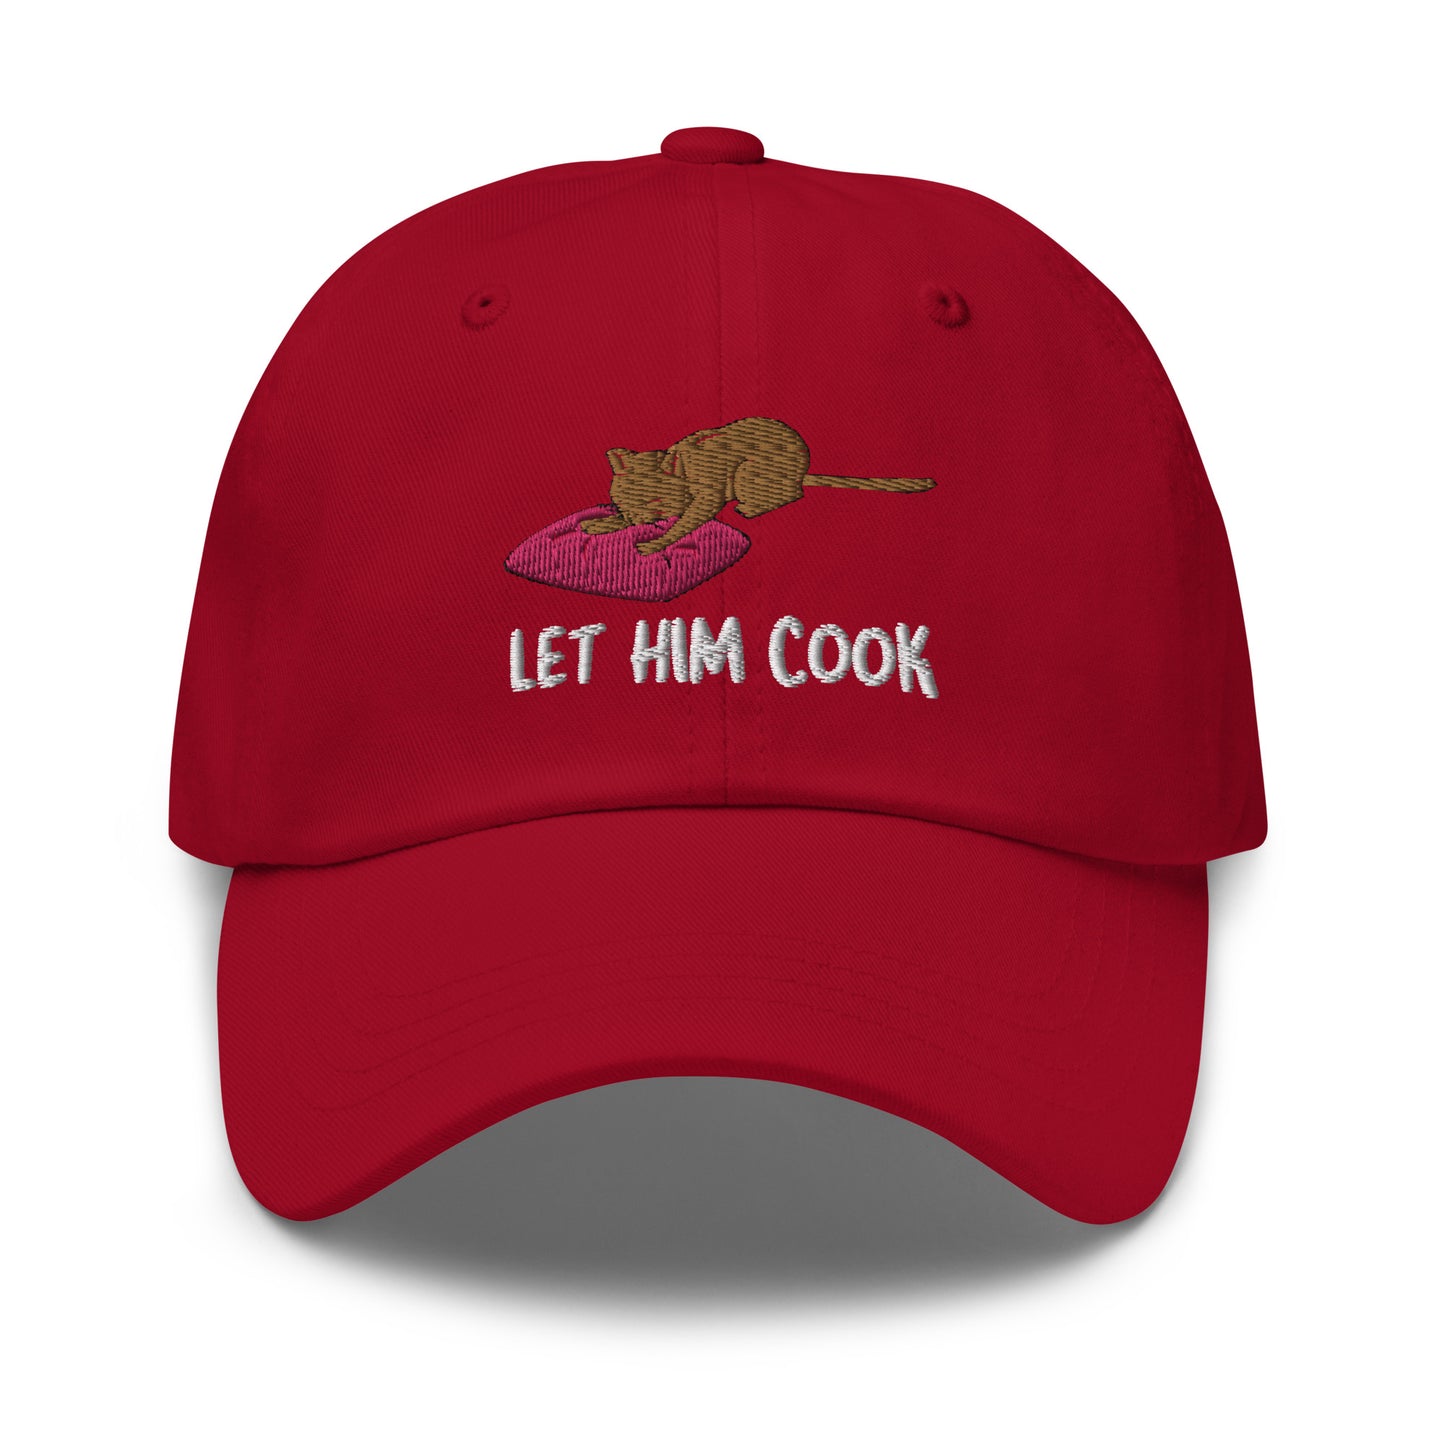 Let Him Cook hat